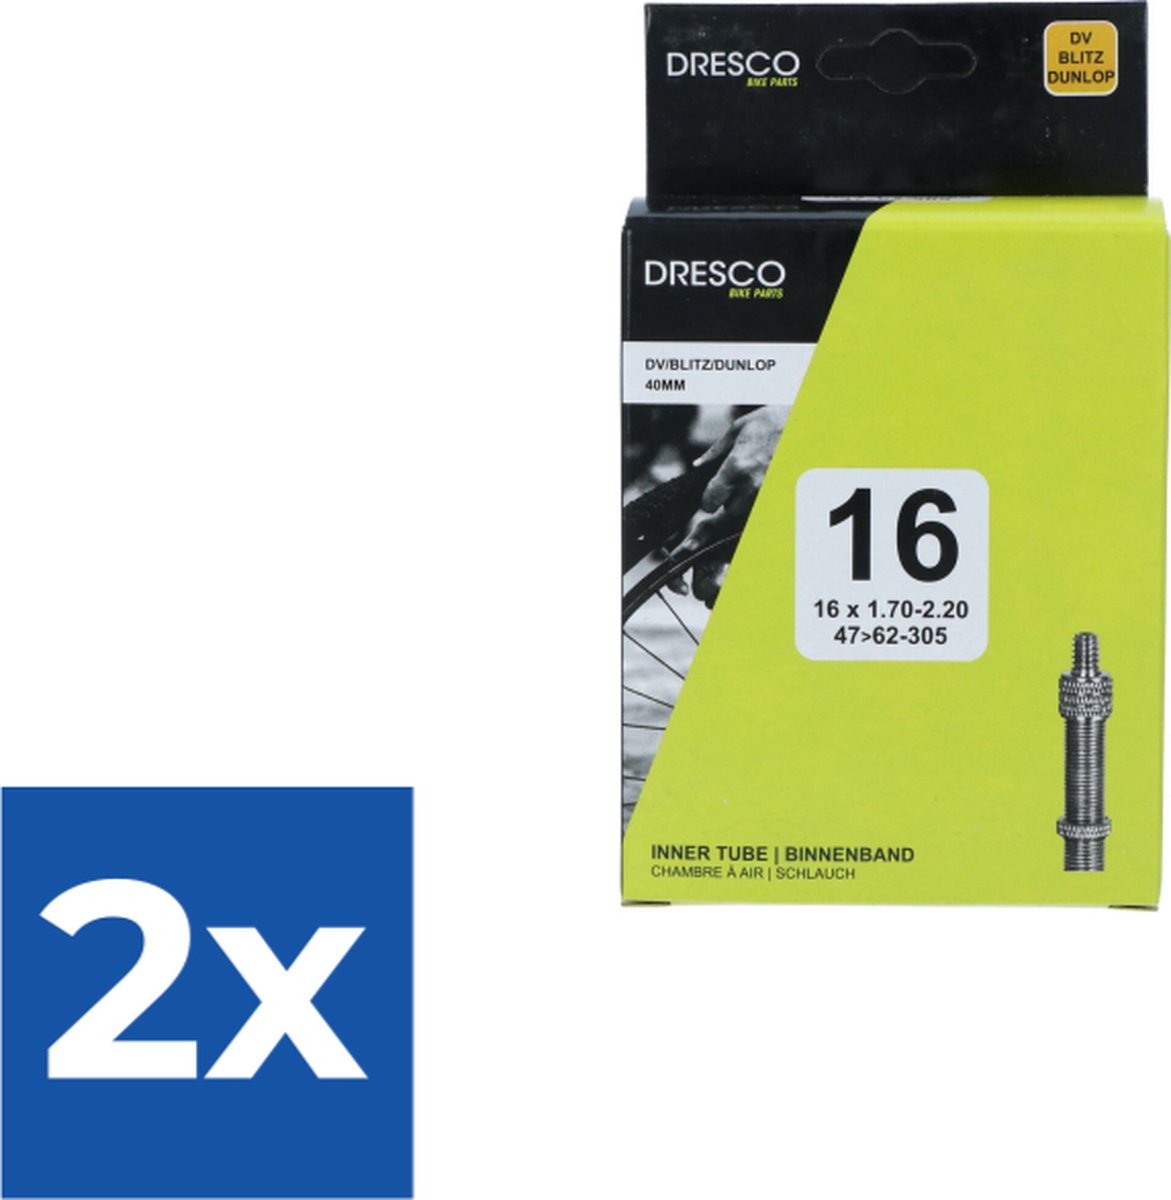 Dresco Binnenband 16 x1.75-2.50 (47/62-305) Dunlop 40mm - Voordeelverpakking 2 stuks